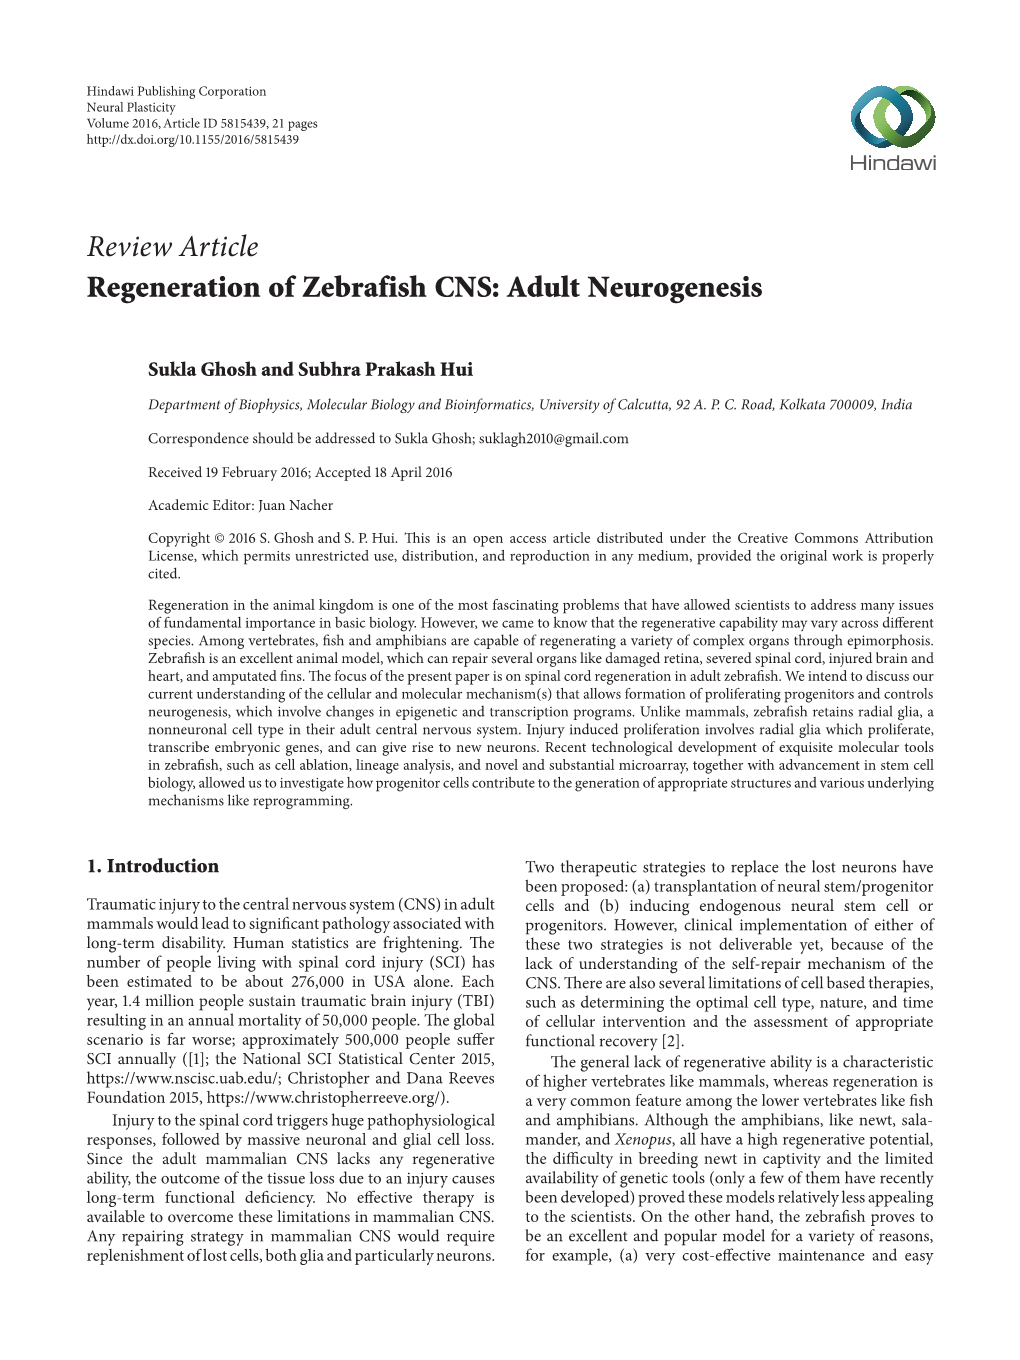 Regeneration of Zebrafish CNS: Adult Neurogenesis